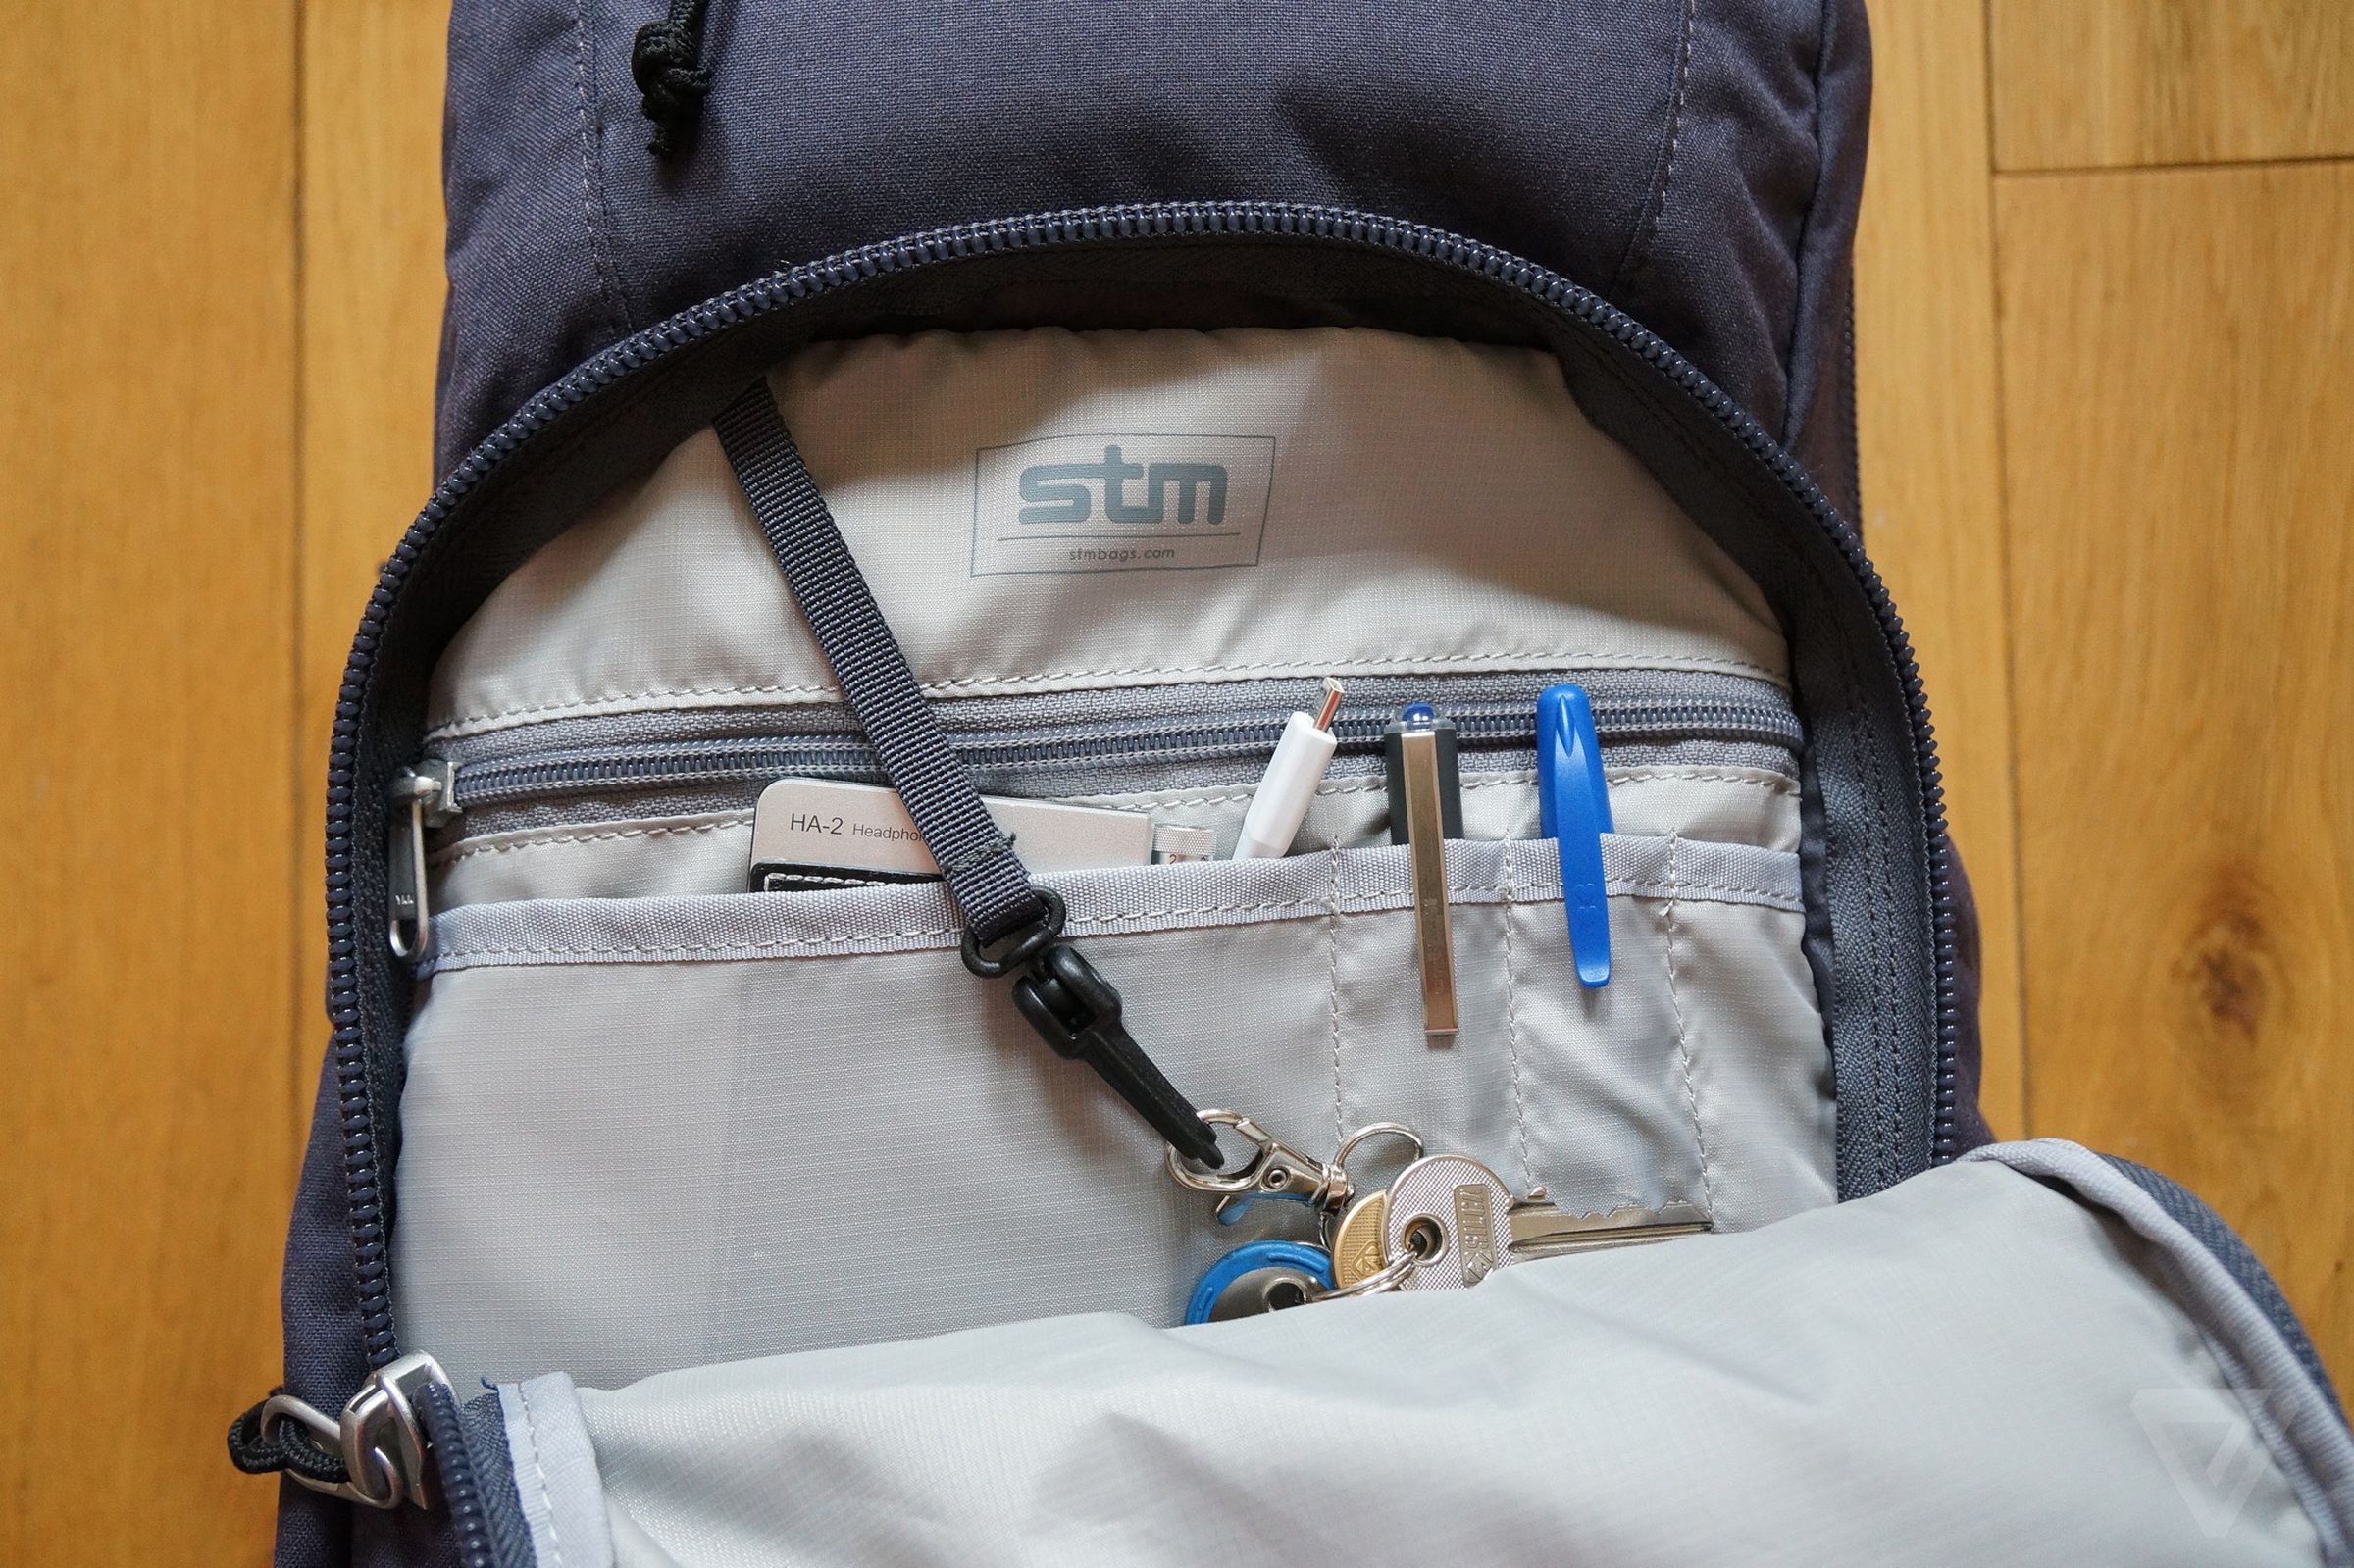 STM Trestle backpack